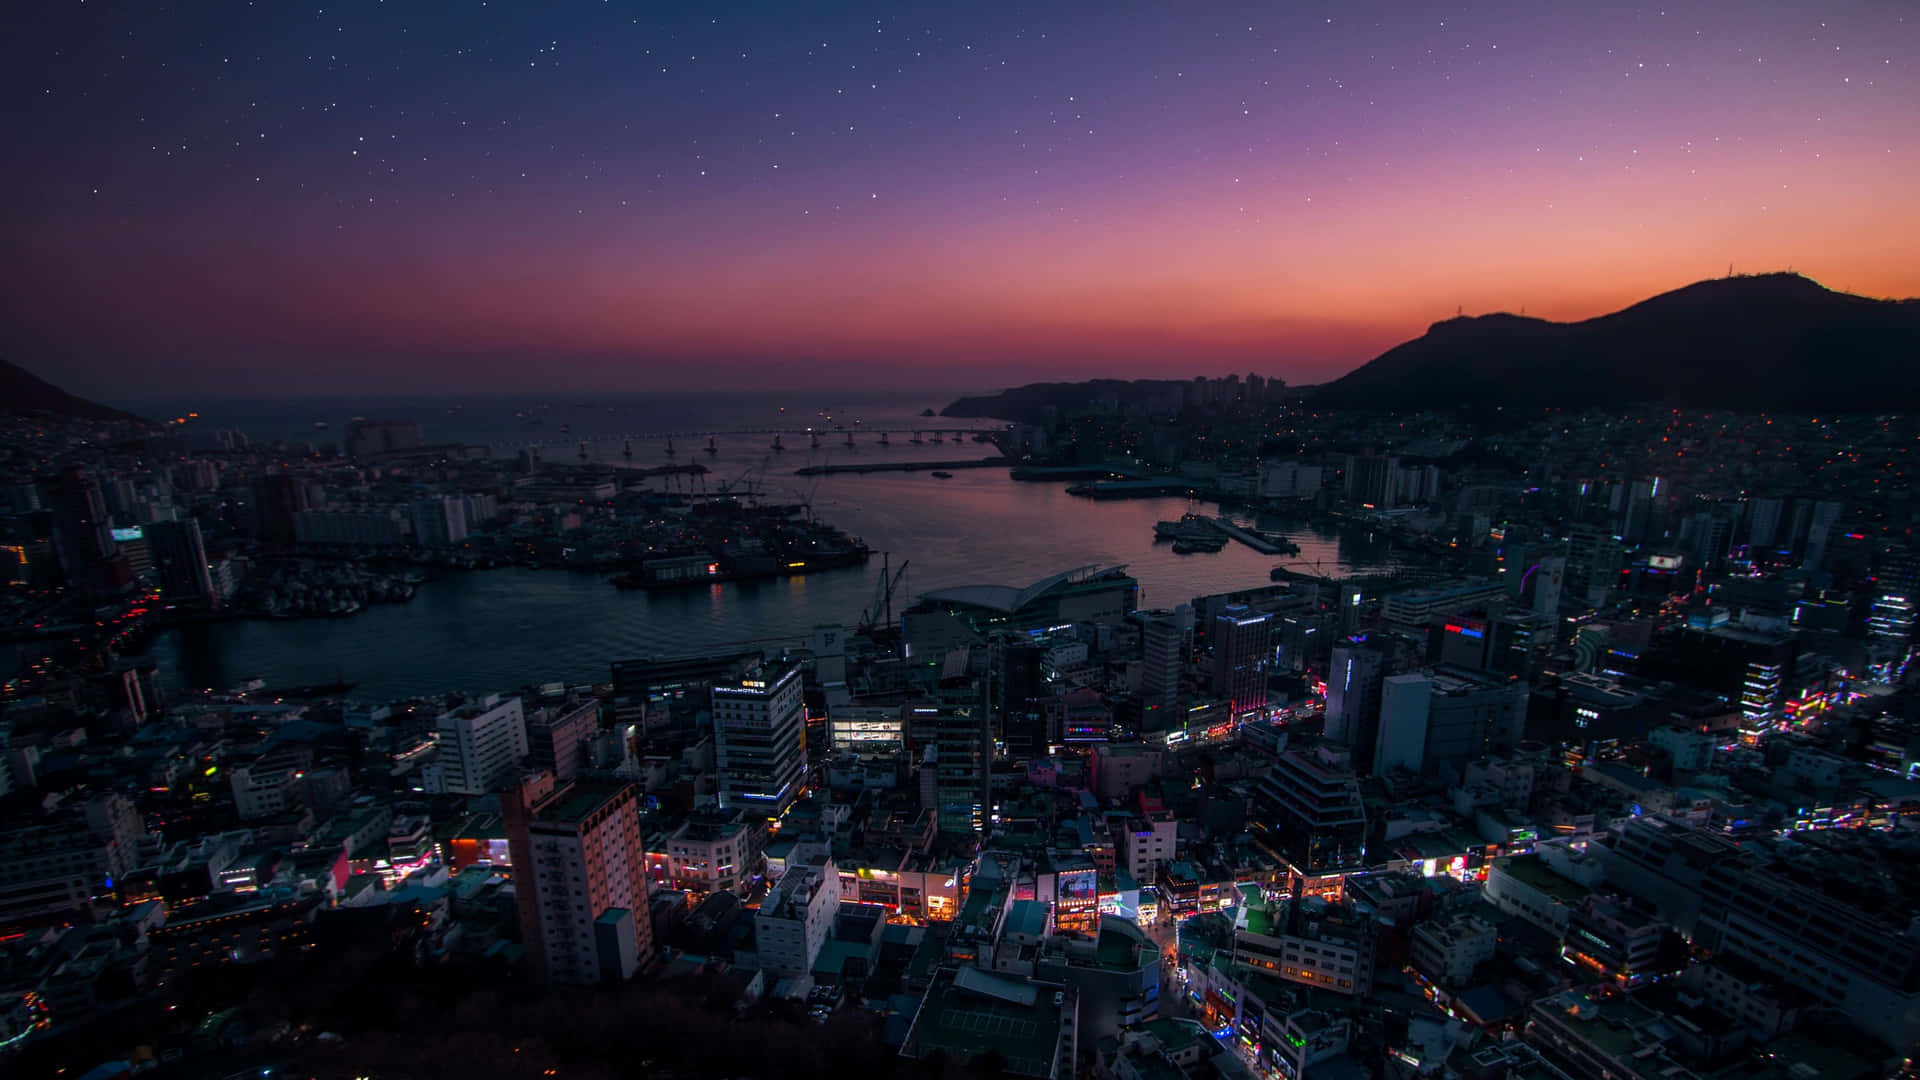 Impresionantepaisaje Urbano De Corea Del Sur Al Anochecer.